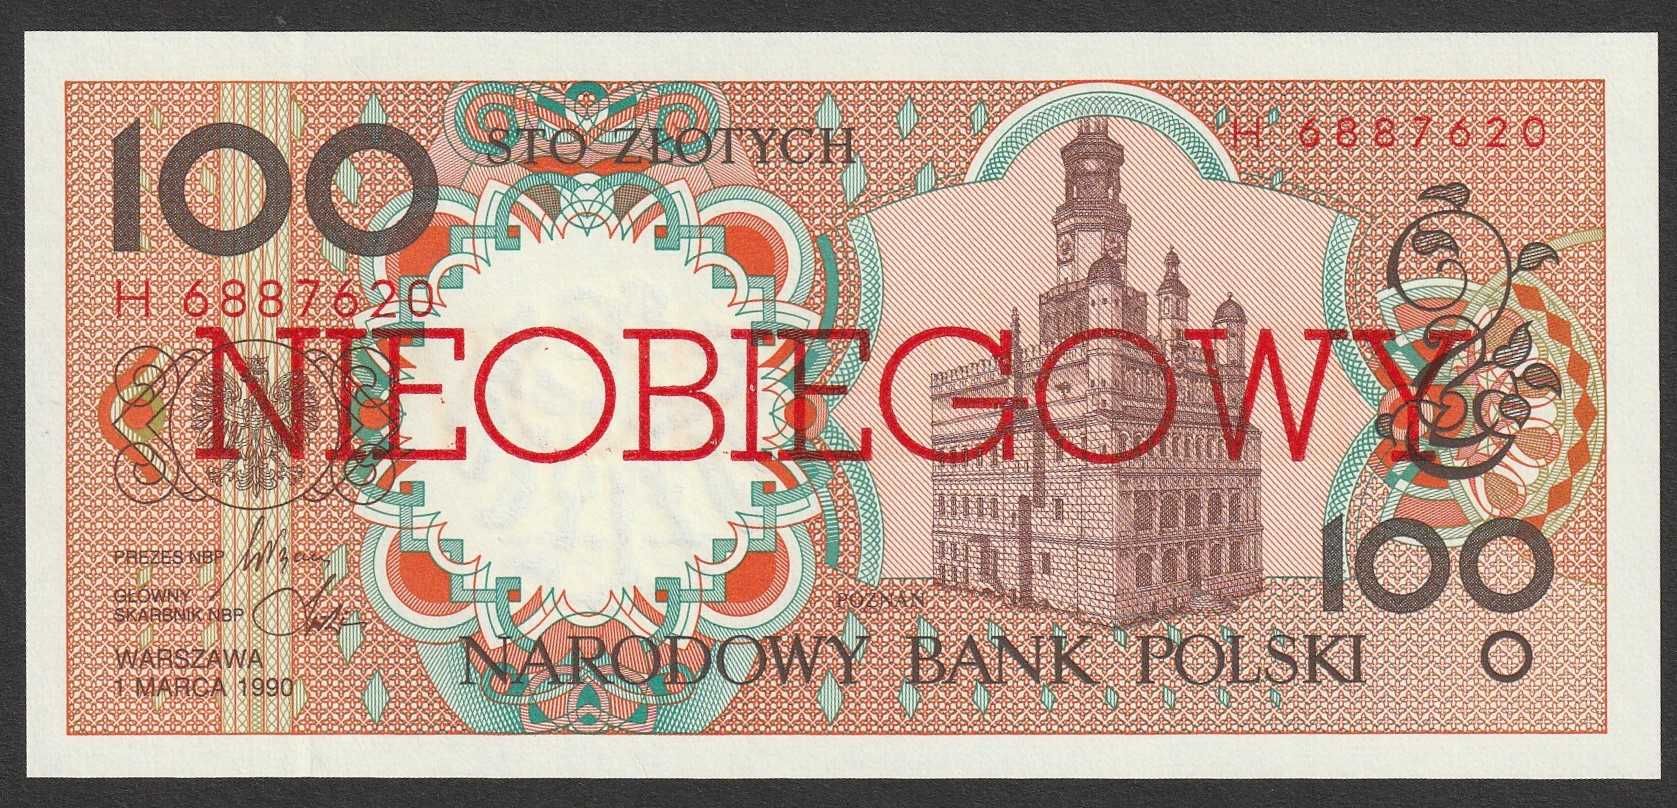 Polska 100 złotych 1990 - NIEOBIEGOWY - stan bankowy UNC